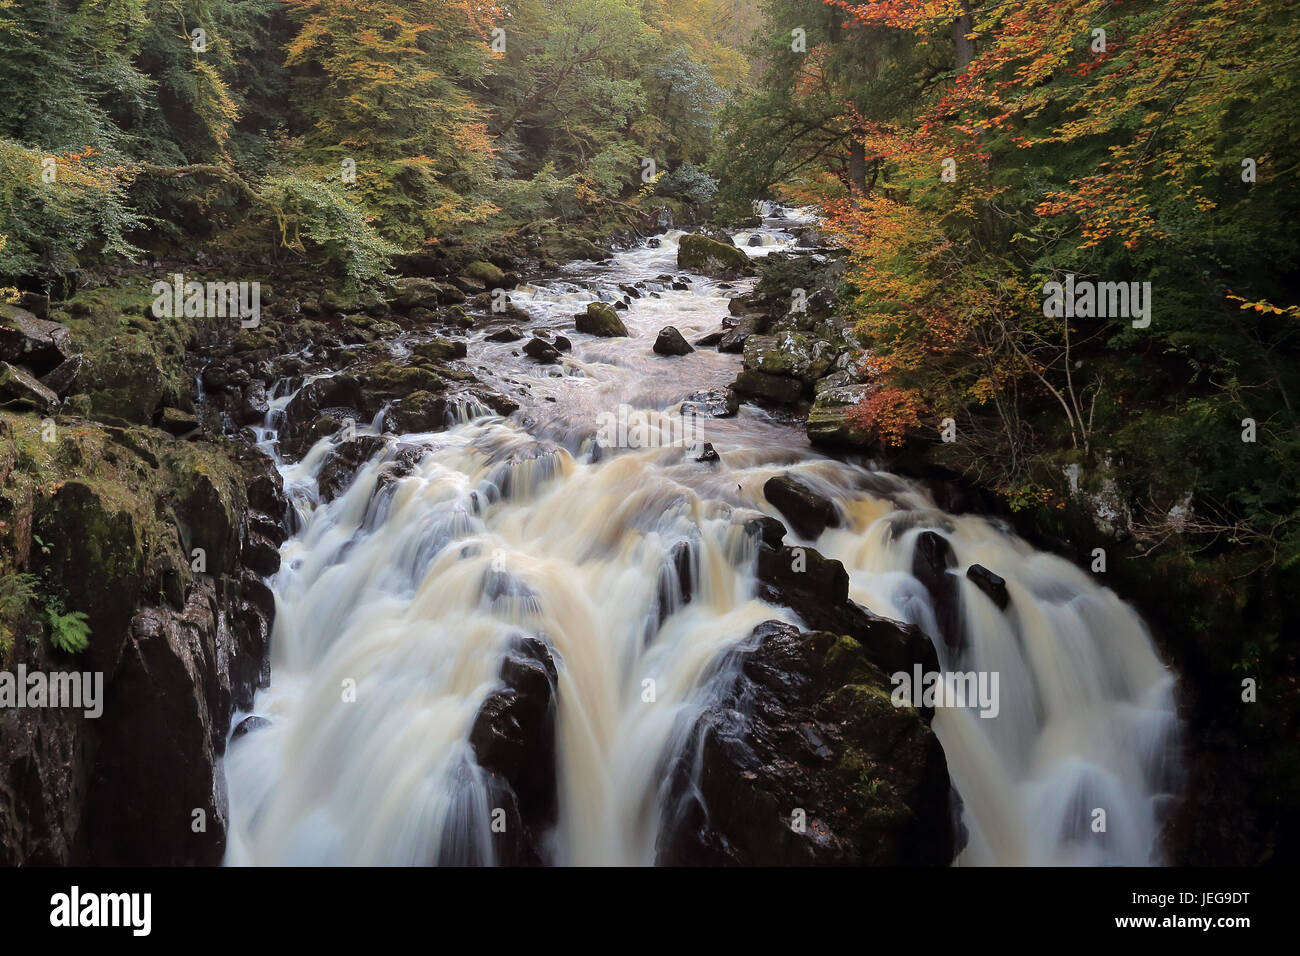 Cascata dall'eremo, Dunkeld, Scozia da River Braan nella foresta Craigvinean in autunno. Foto Stock